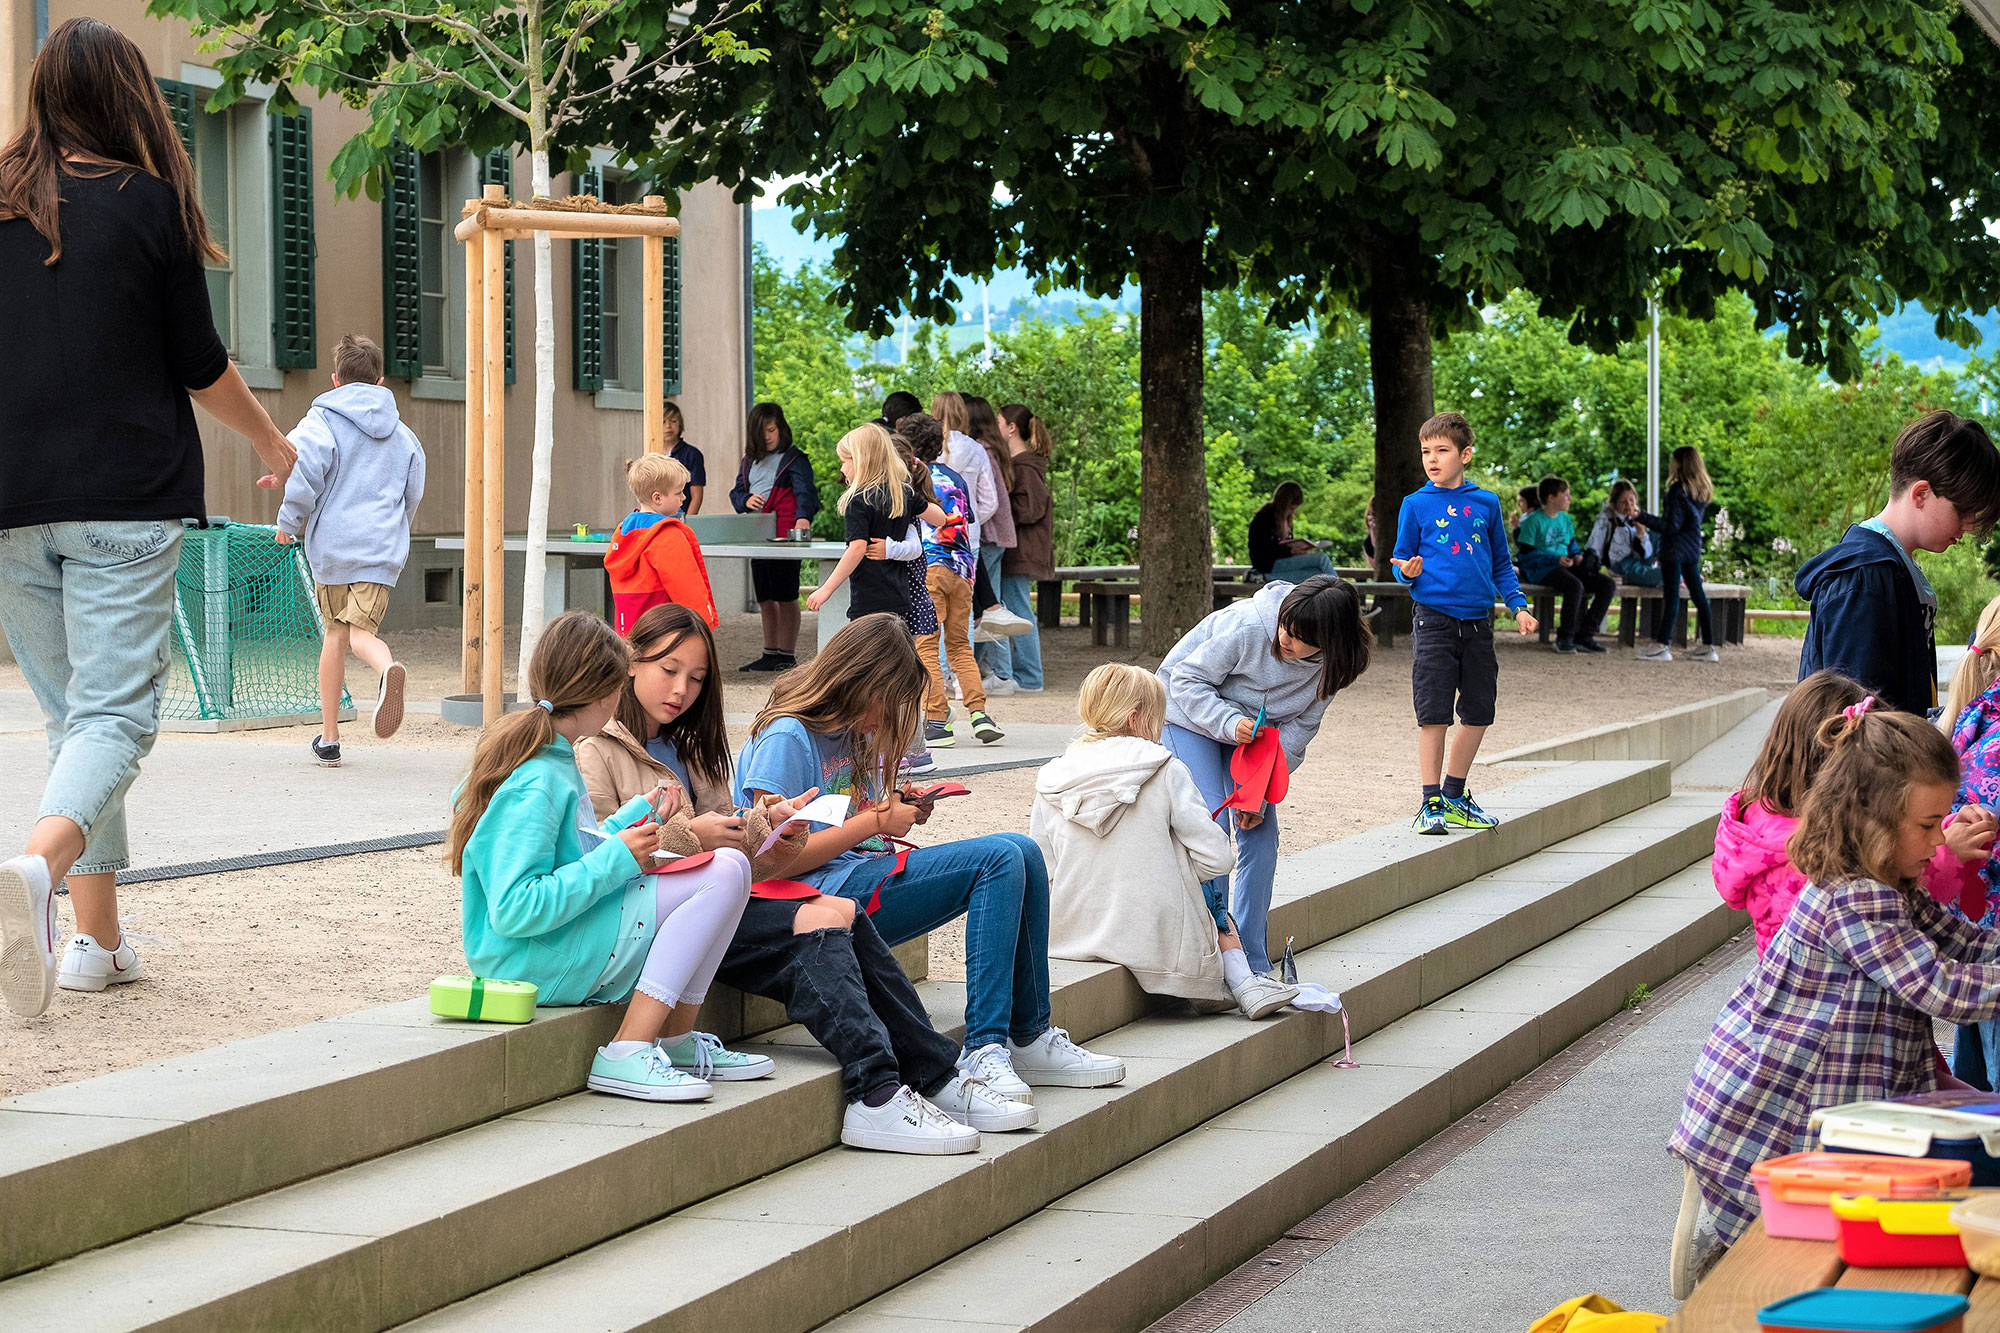 Schülerinnen und Schüler sitzen und spielen draussen auf dem Pausenplatz der Schule mit grossen, grünen Bäumen im Hintergrund. 	